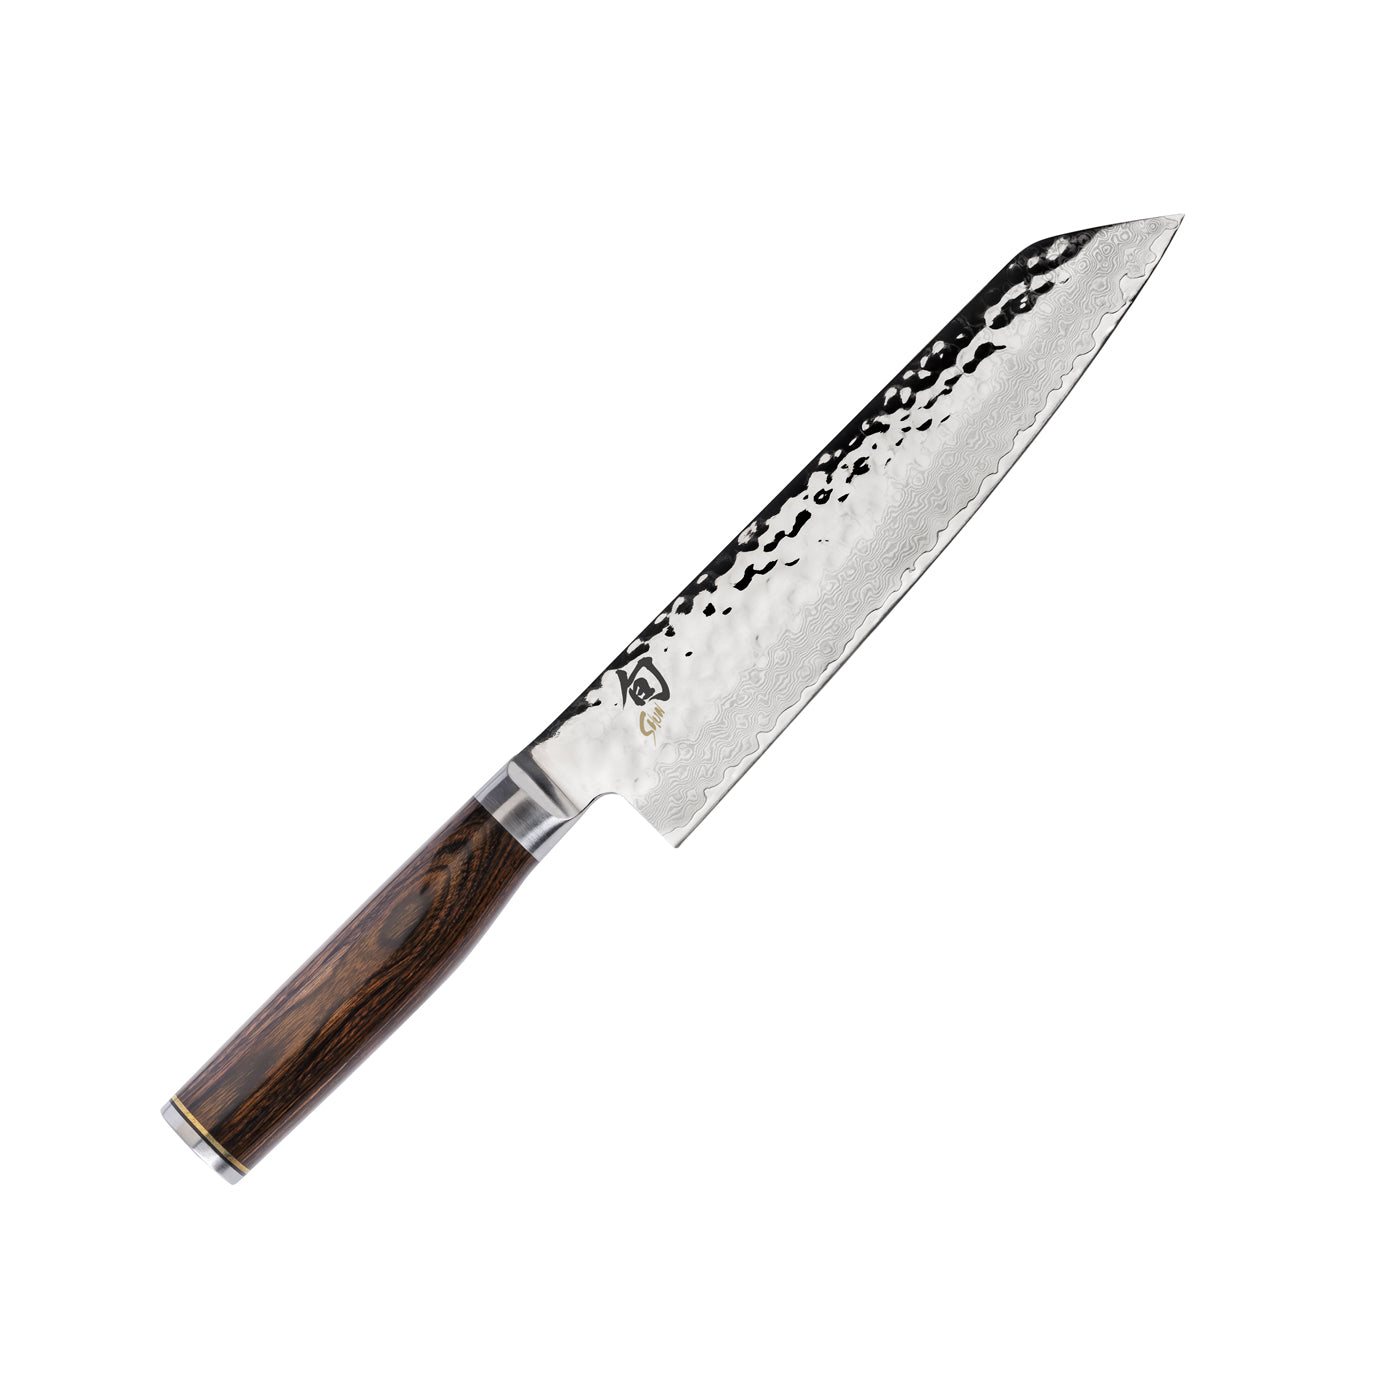 Shun Premier 8-in. Chef's Knife